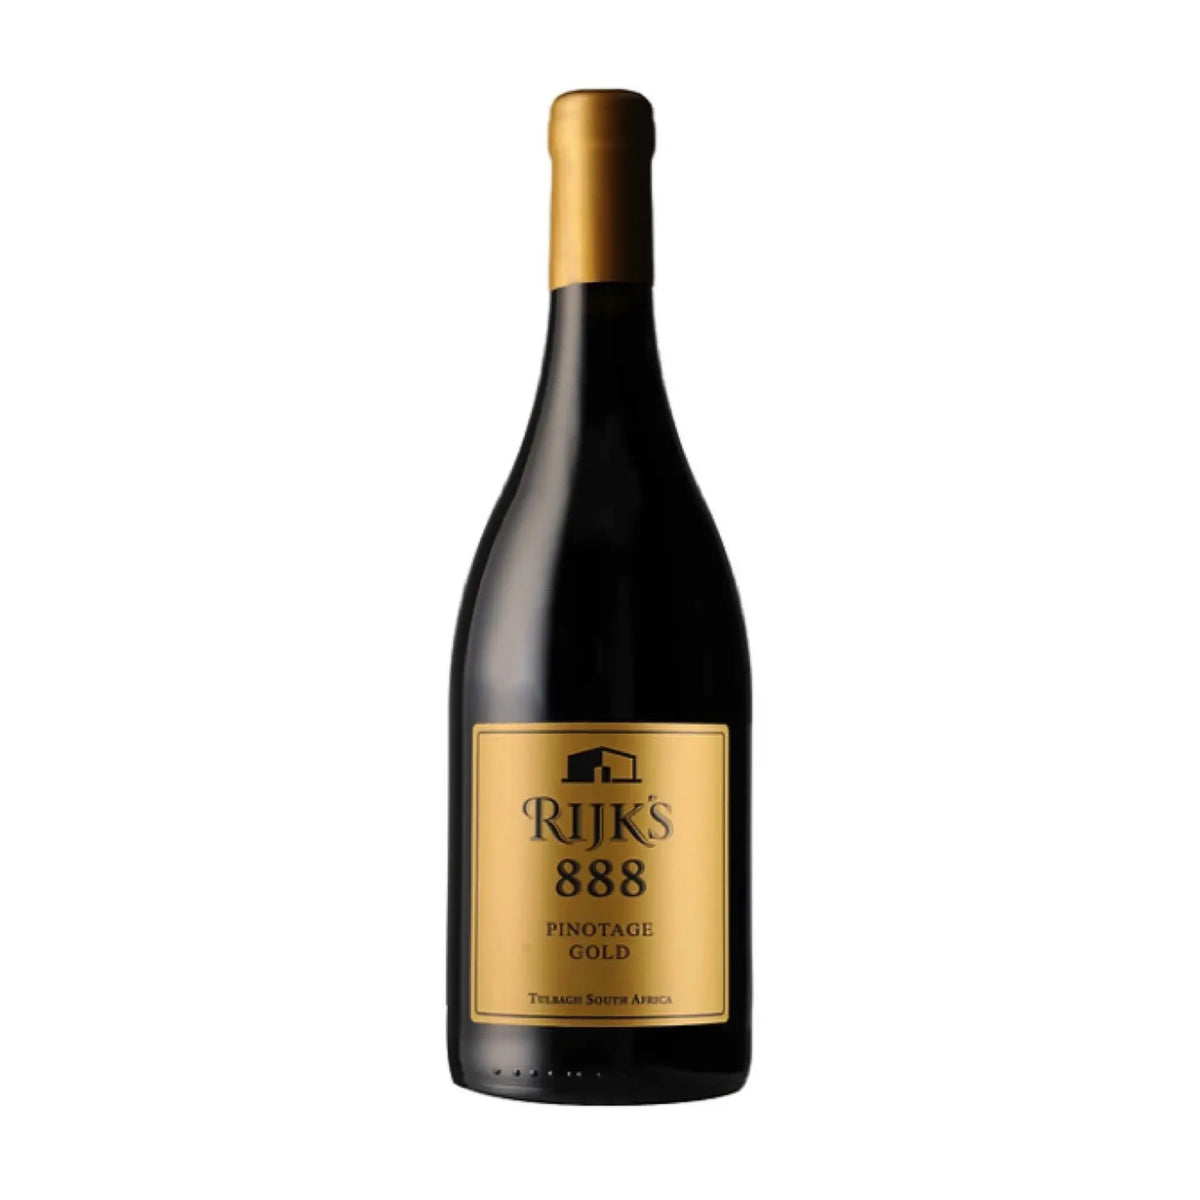 Rijk's Wine Estate-Rotwein-Pinotage-Südafrika-Tulbagh-2015 Pinotage 888 Gold-WINECOM